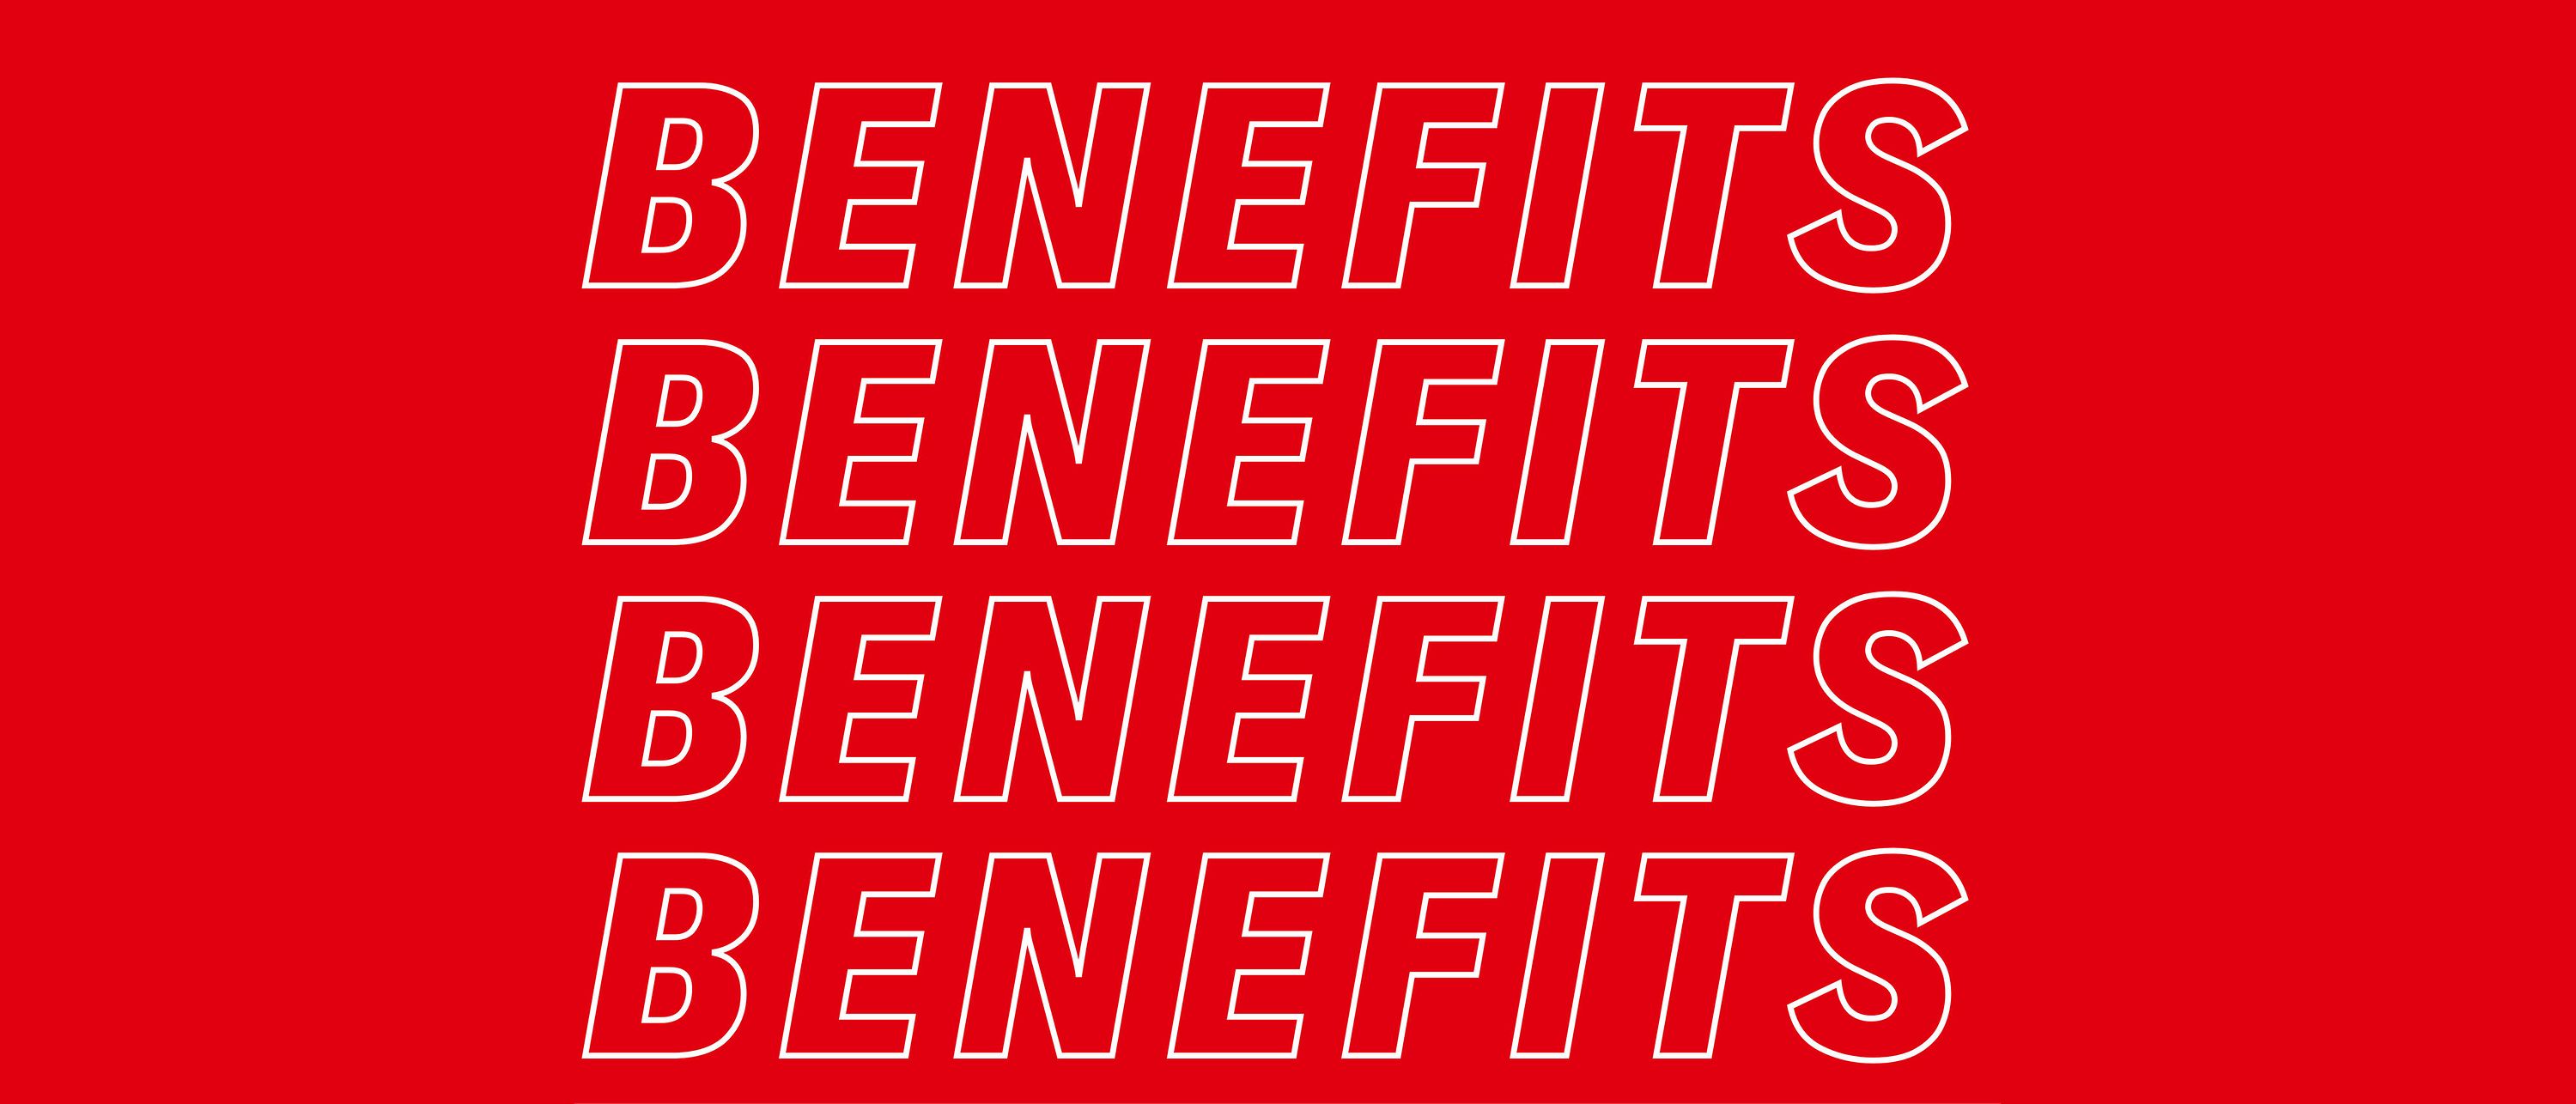 Das Wort “Benefits” in weißer Outline auf rotem Hintergrund.